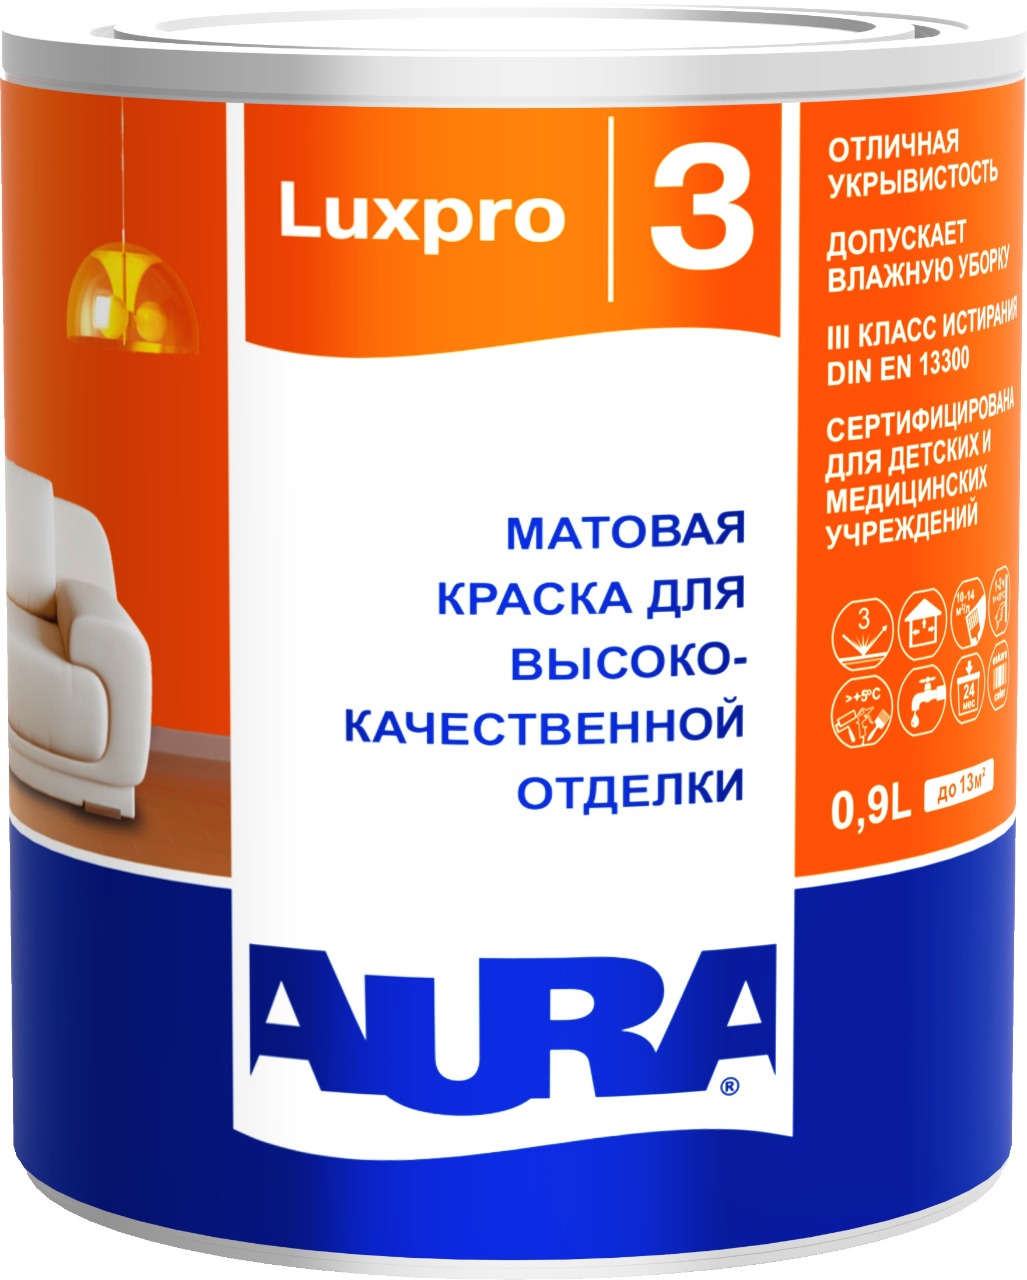 Матовая краска для высококачественной отделки AURA Luxpro 3 / АУРА Люкспро 3 0,9 л (база А)								